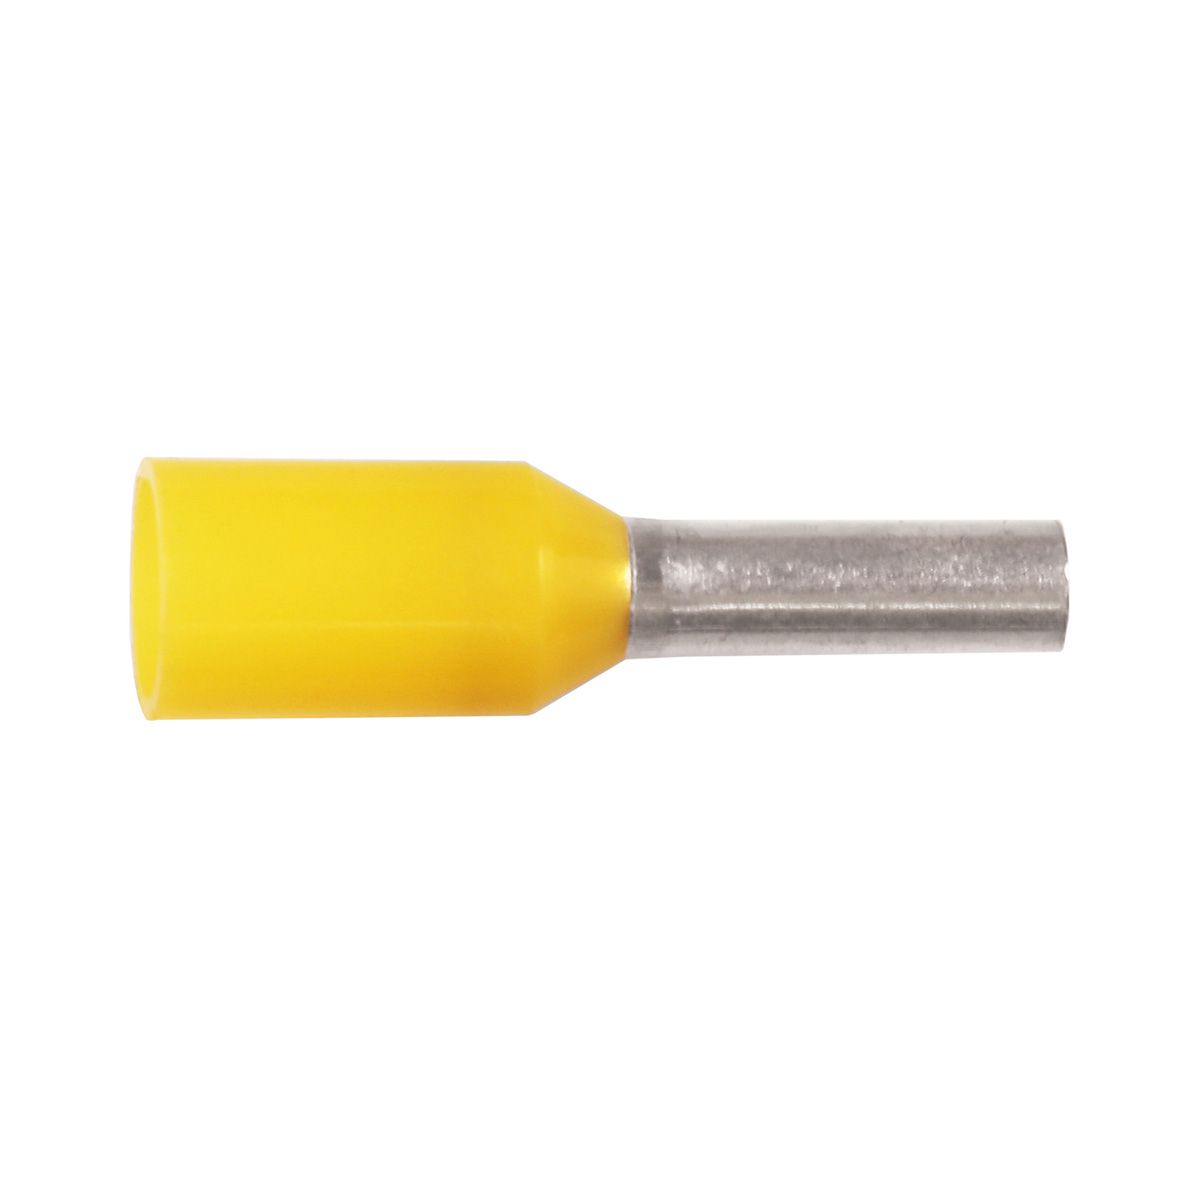 KA1-10ETW Ізольований гільзовий накінечник 1 мм² / L1=10 мм / жовтий / упак. 500 шт